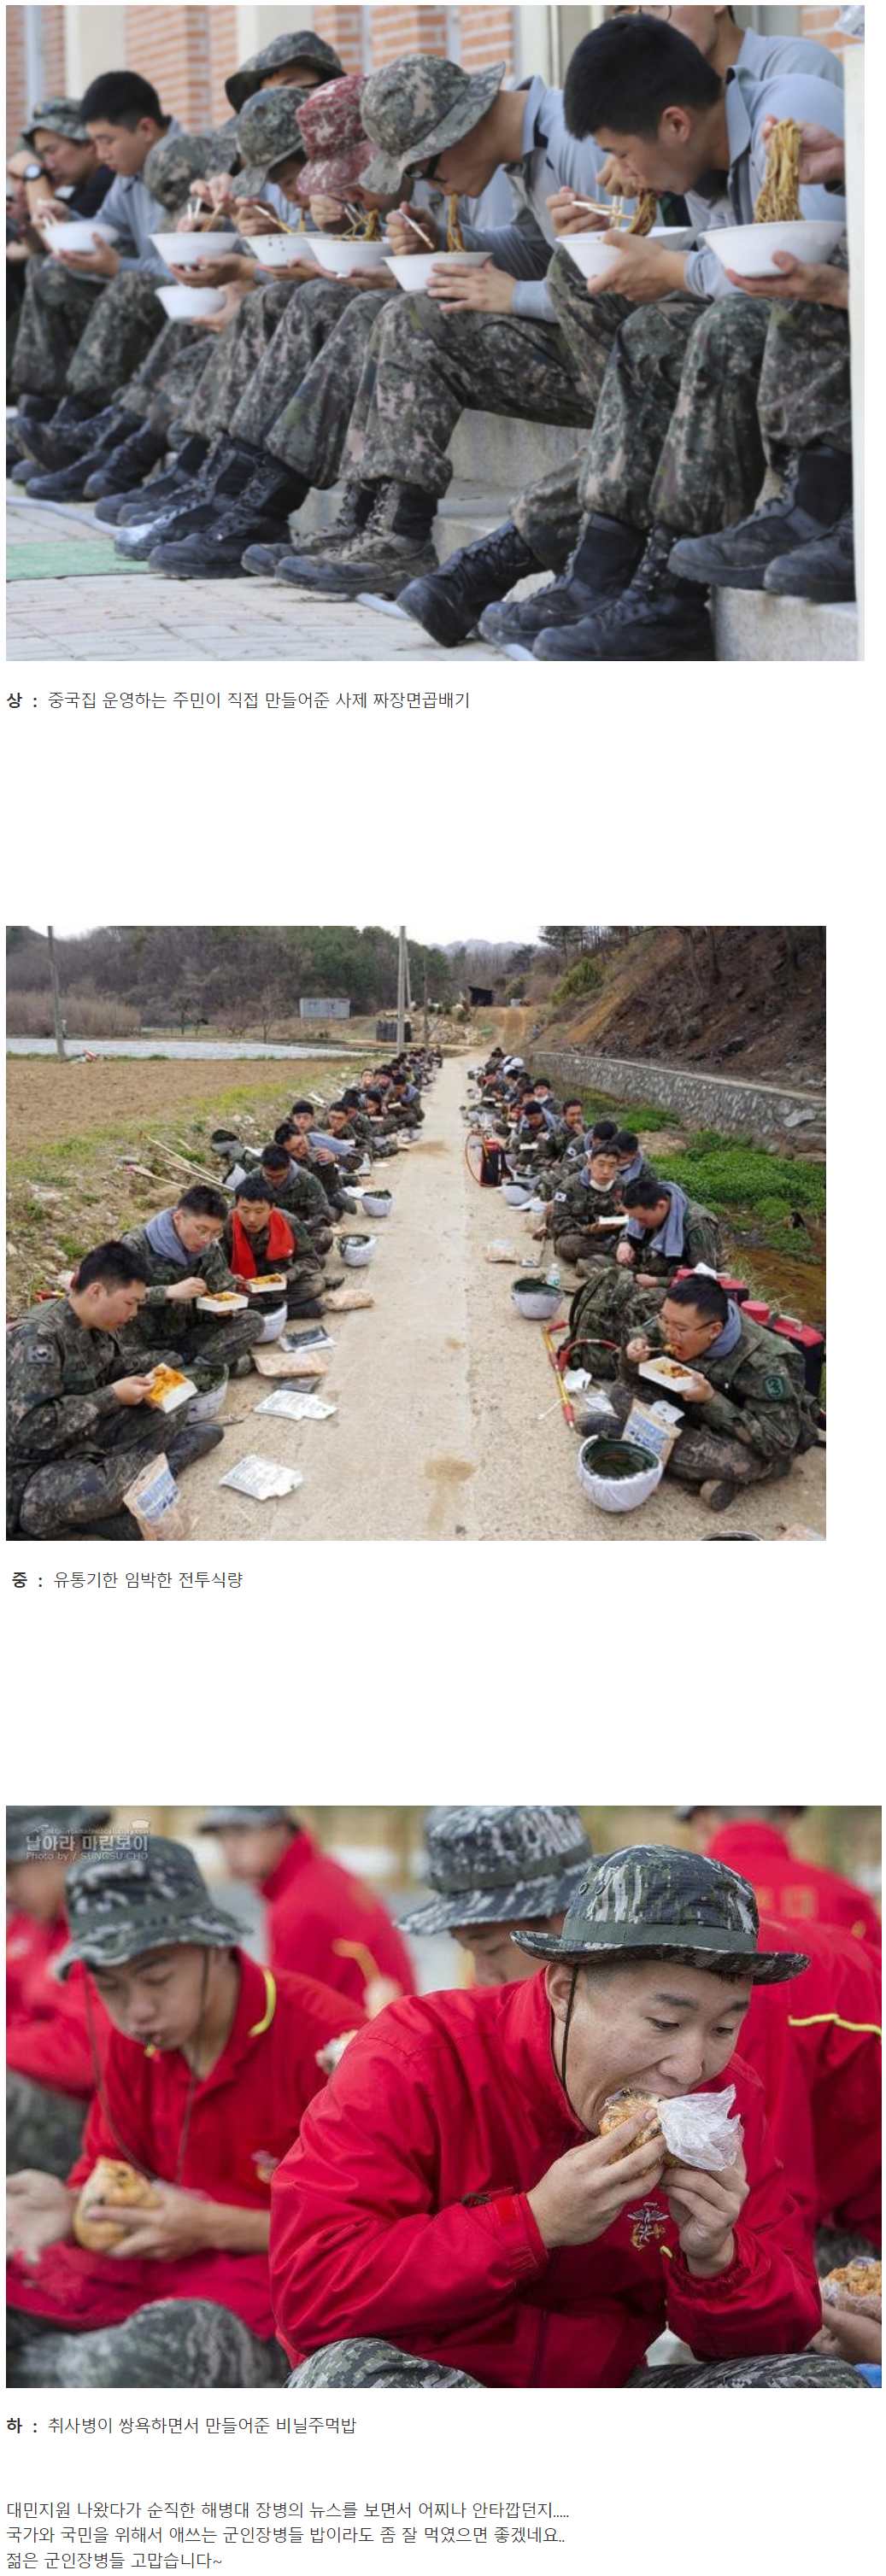 대민지원 나간 군인들 점심 등급